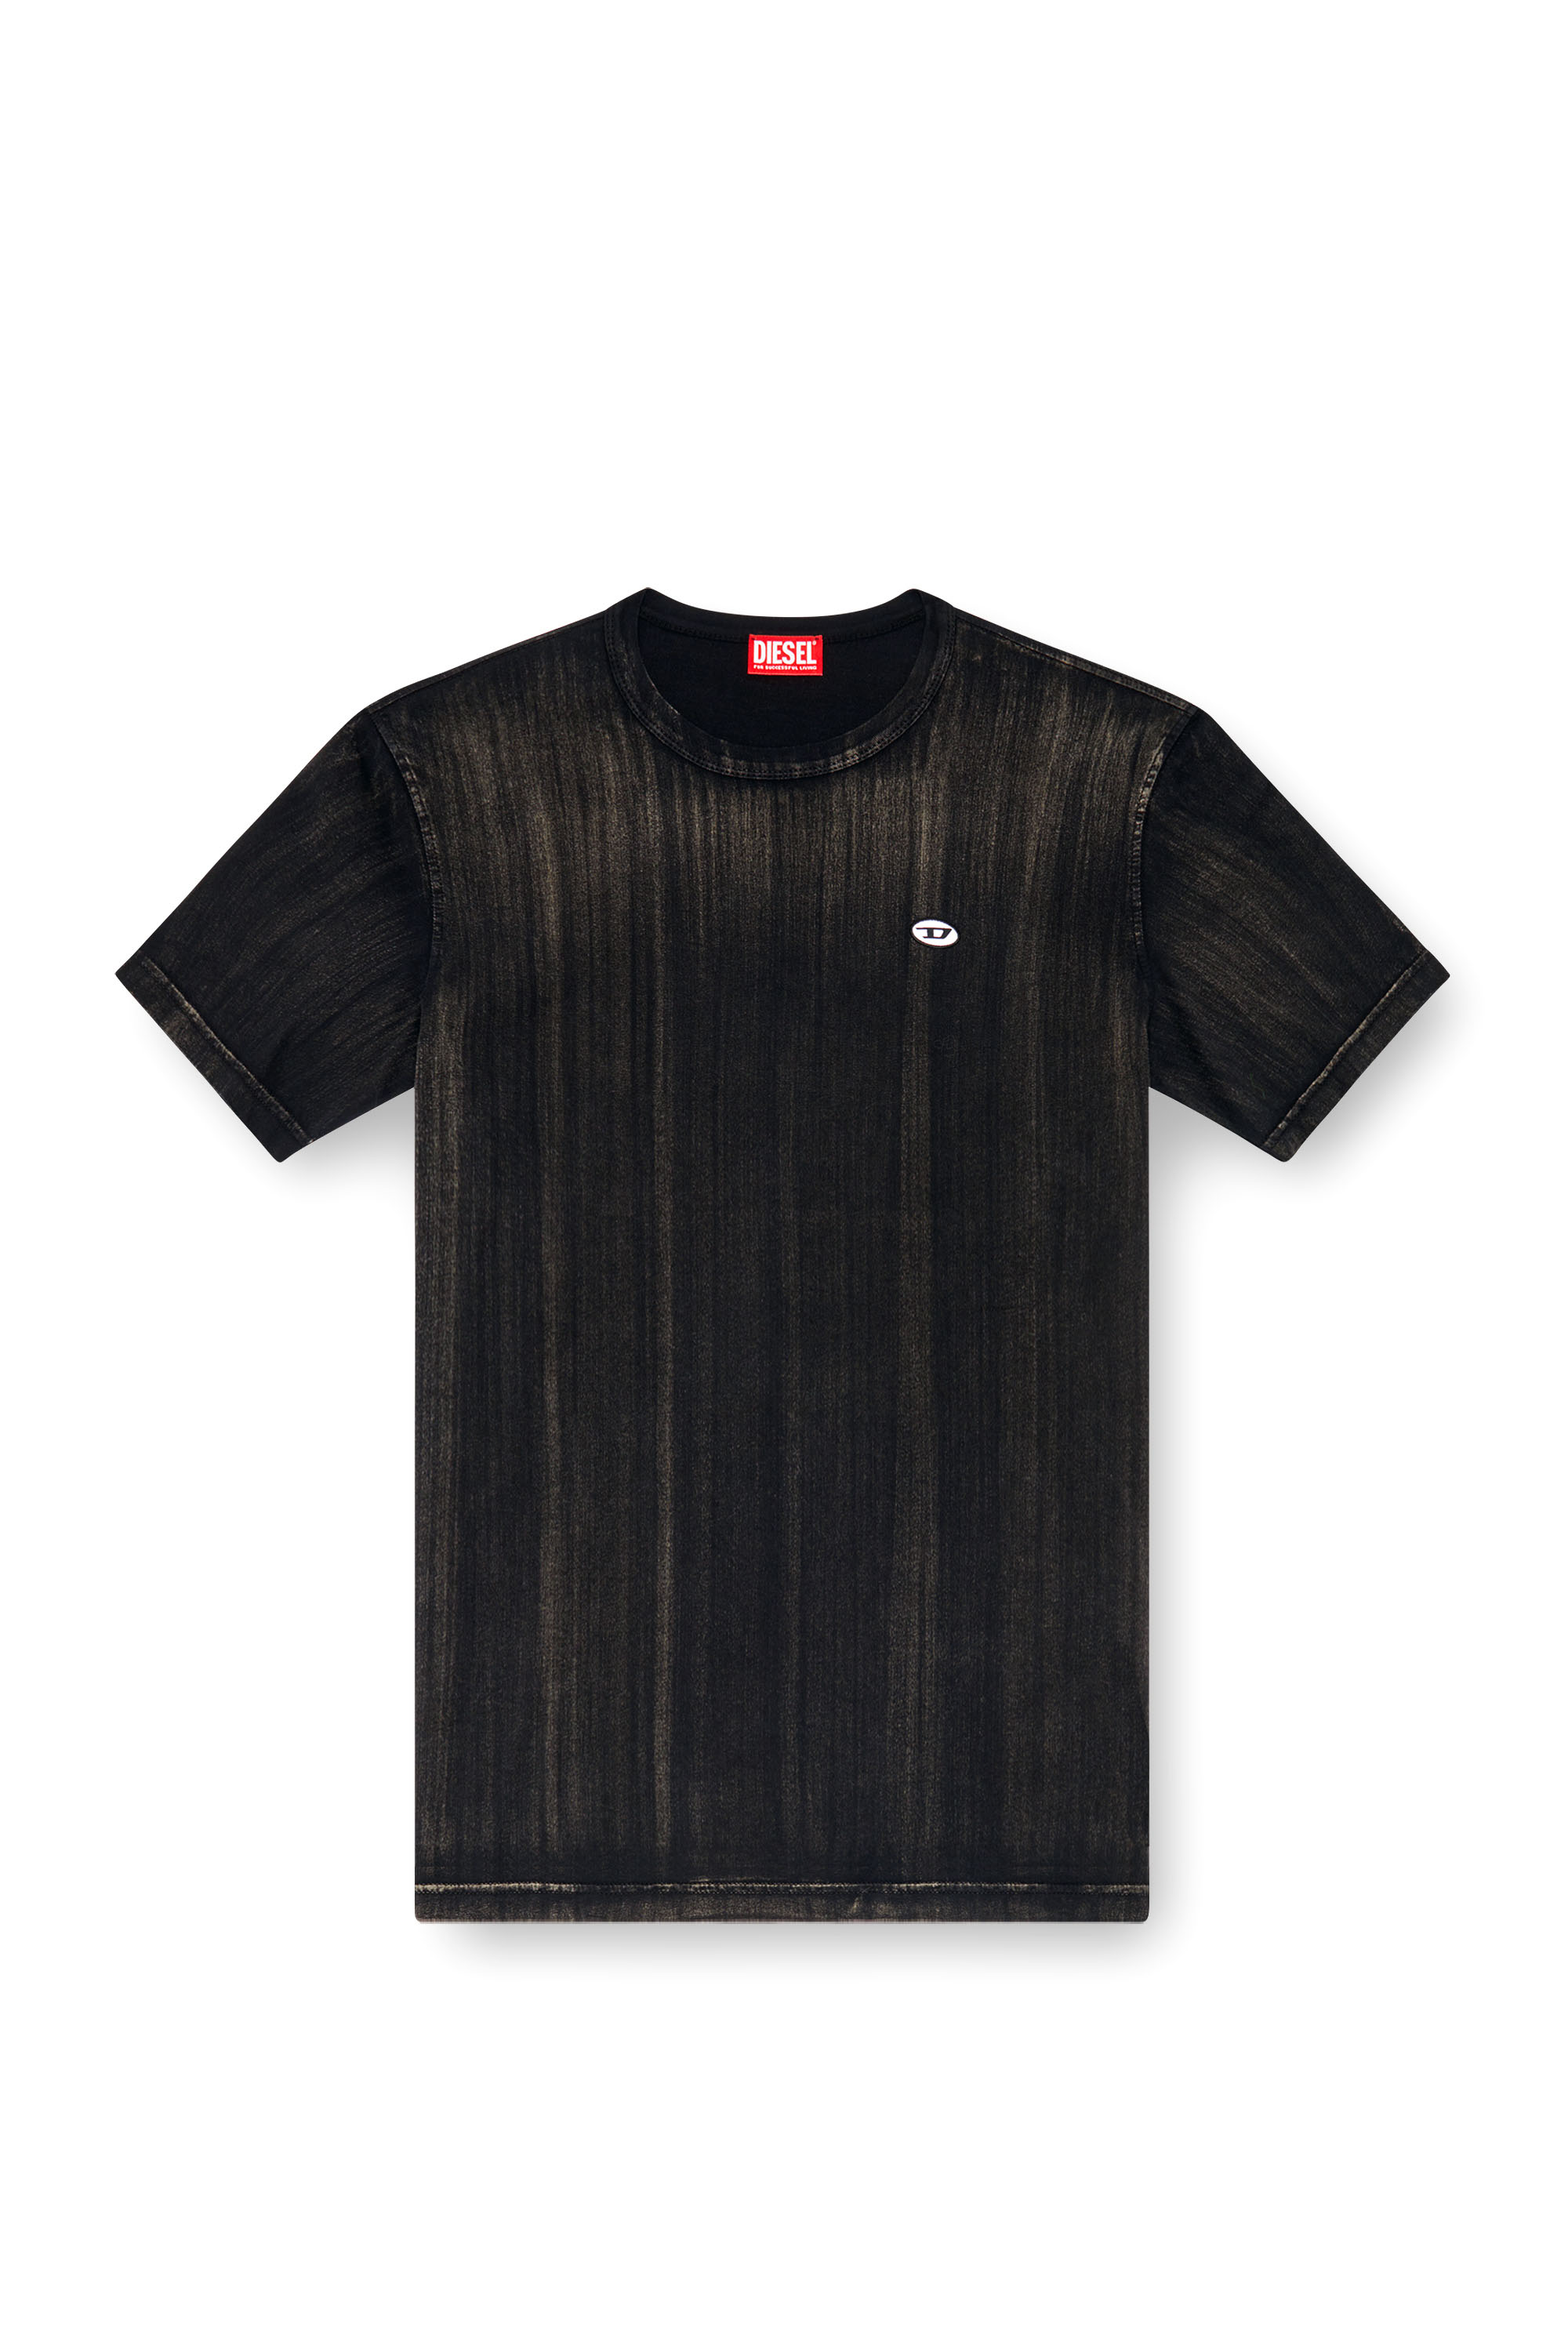 Diesel - T-ADJUST-K8, Hombre Camiseta con desteñido a pinceladas in Negro - Image 4